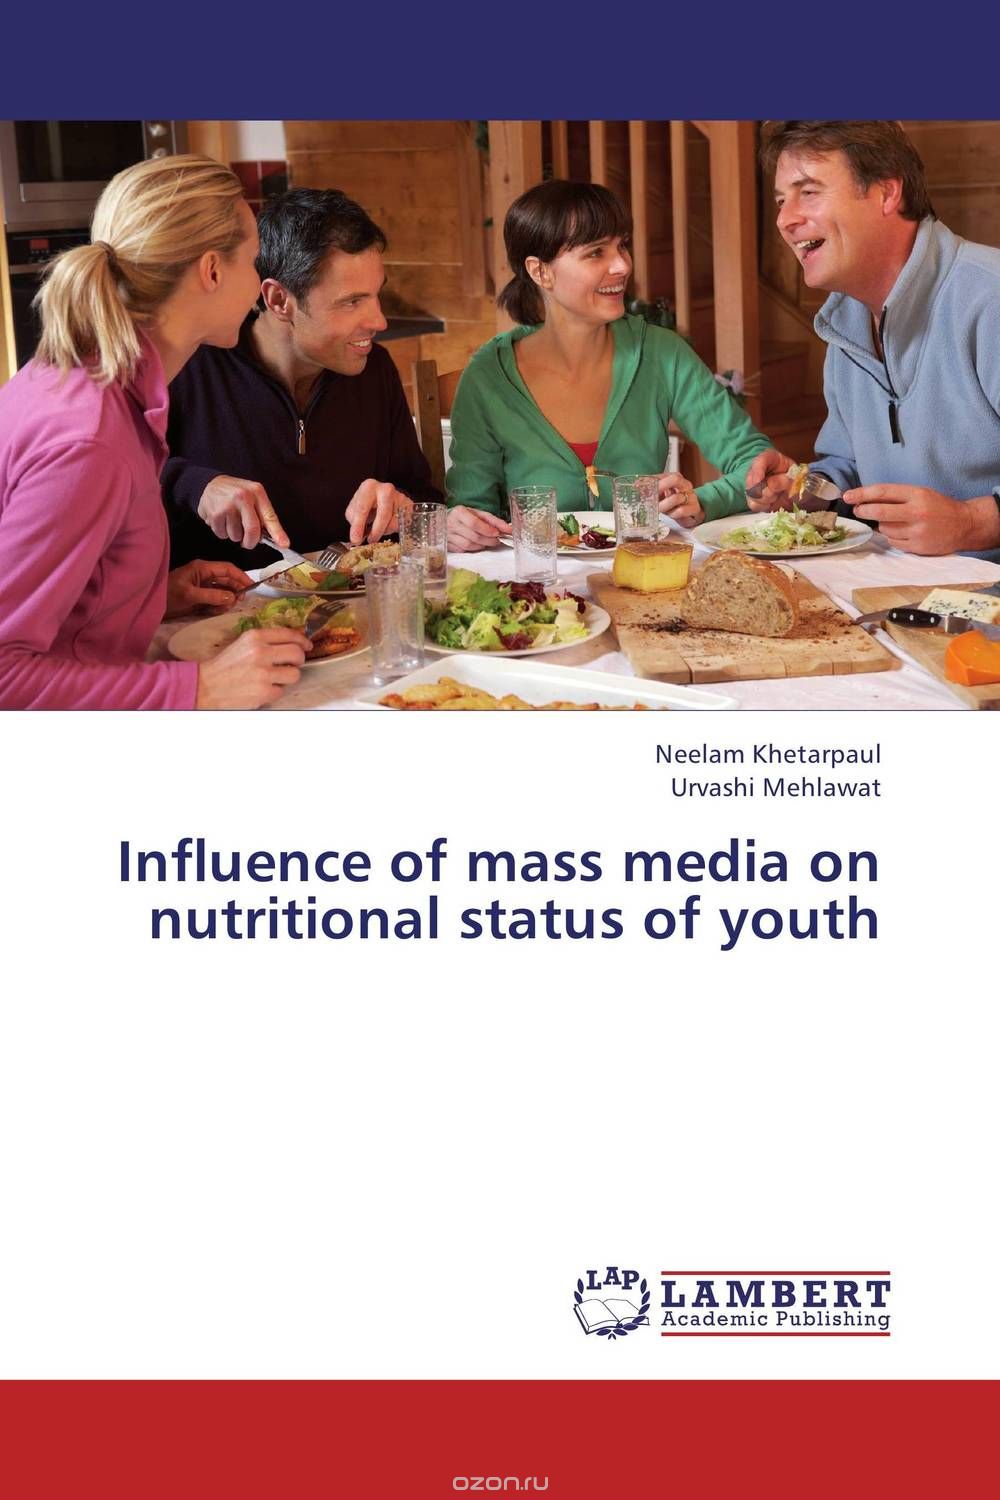 Скачать книгу "Influence of mass media on nutritional status of youth"